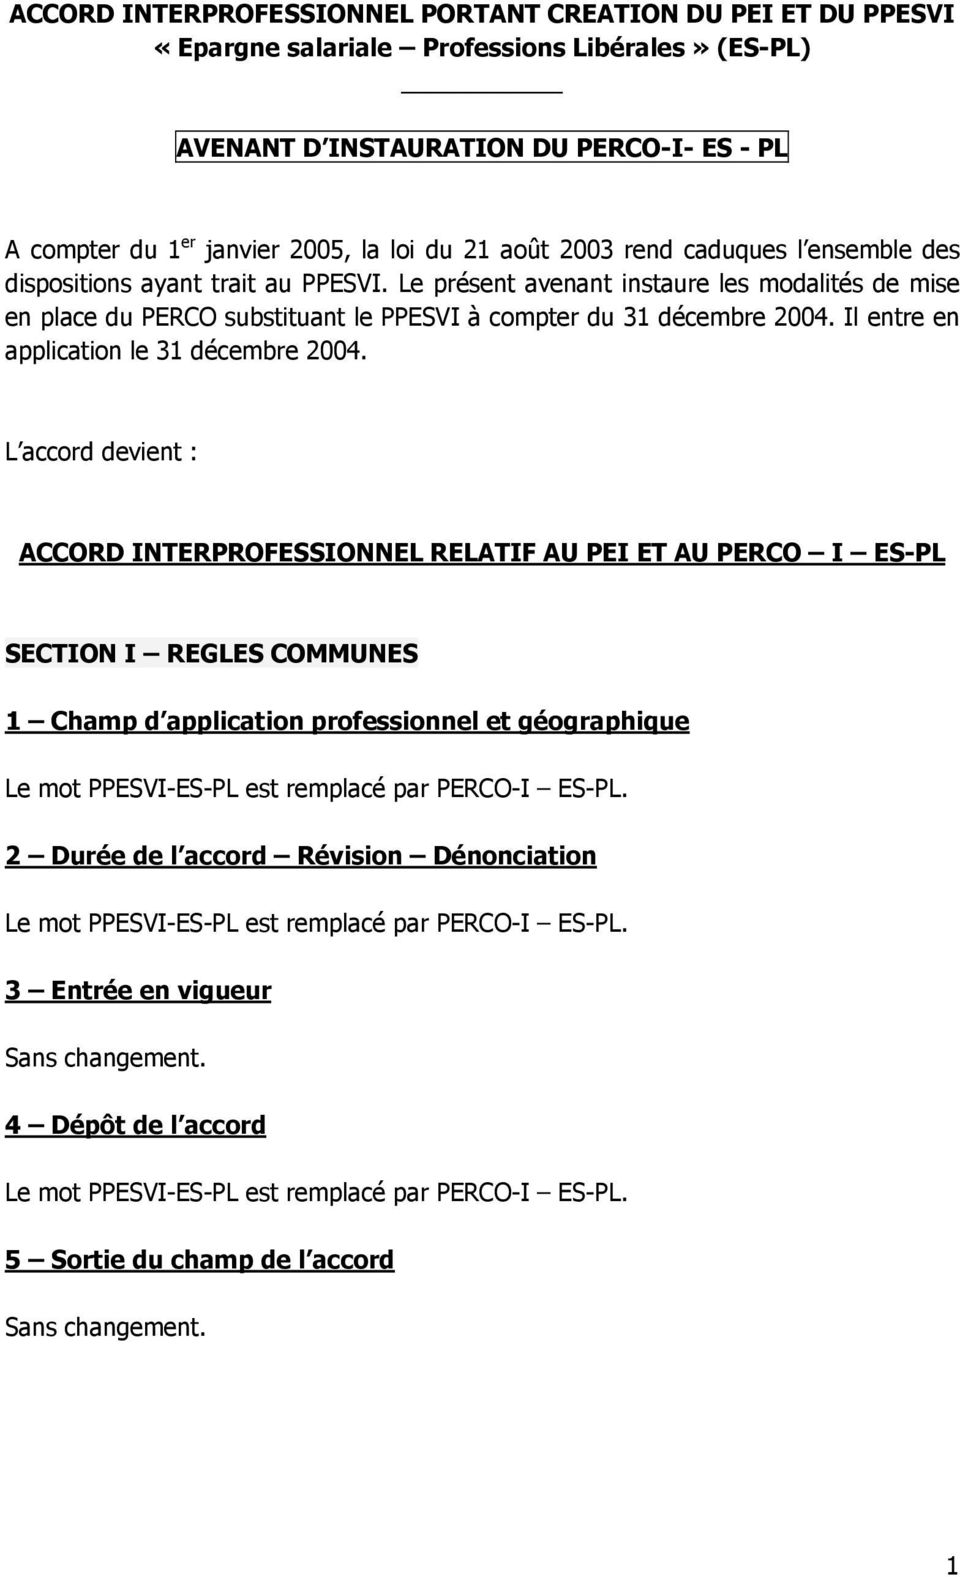 Le présent avenant instaure les modalités de mise en place du PERCO substituant le PPESVI à compter du 31 décembre 2004. Il entre en application le 31 décembre 2004.